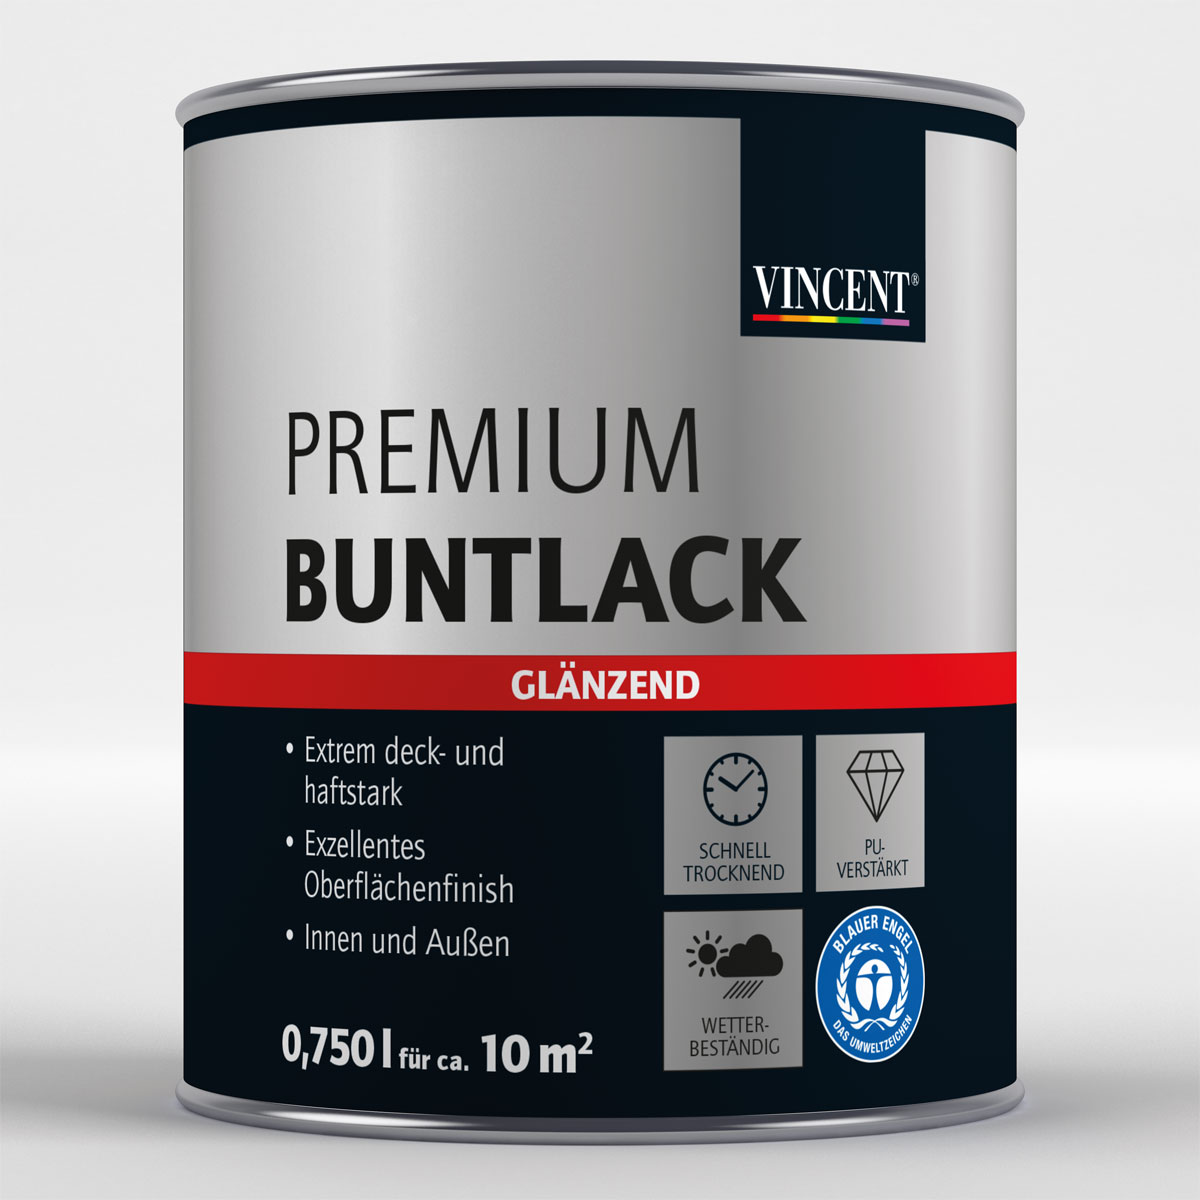 Premium Buntlack „Mandelbraun“ glänzend, 750 ml